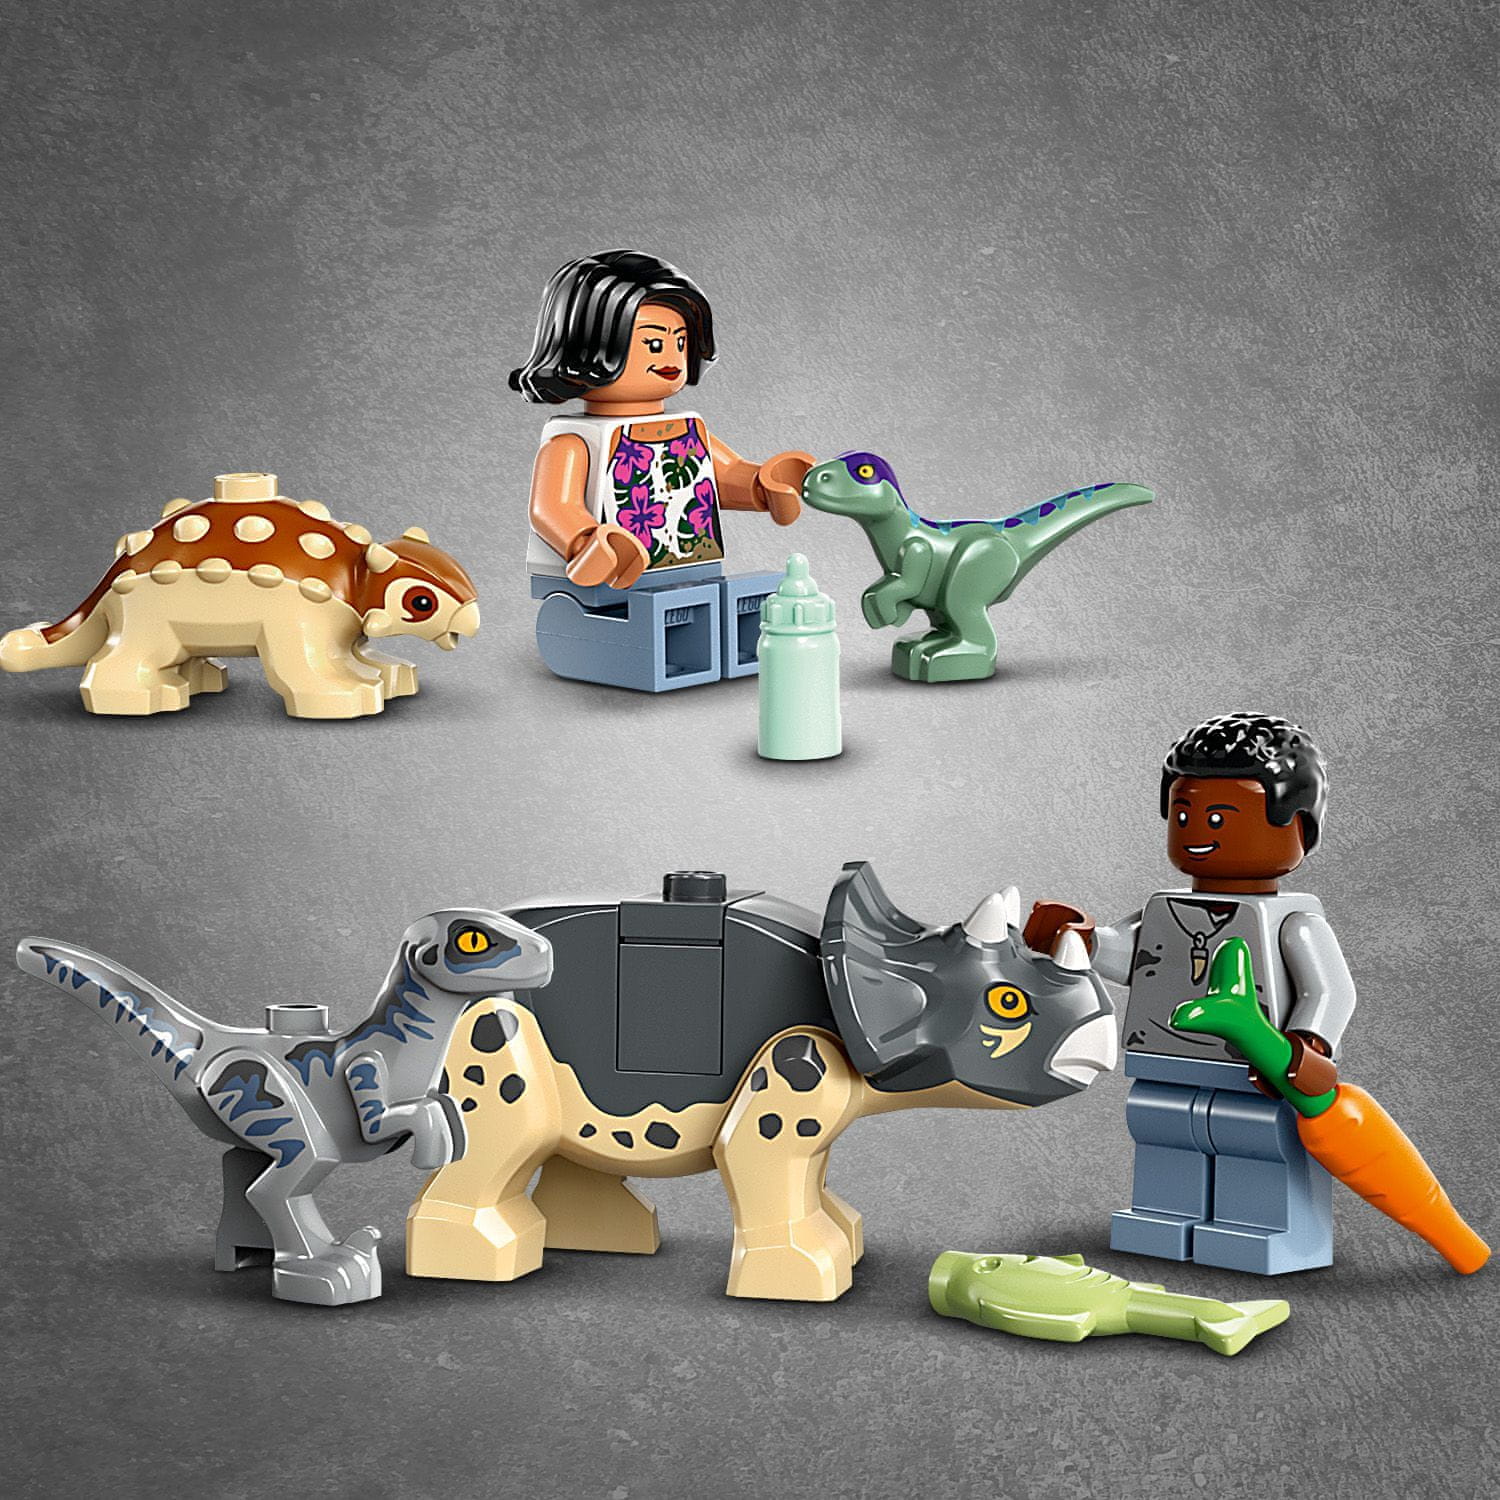 LEGO Jurassic World 76963 Záchranářské středisko pro dinosauří mláďata